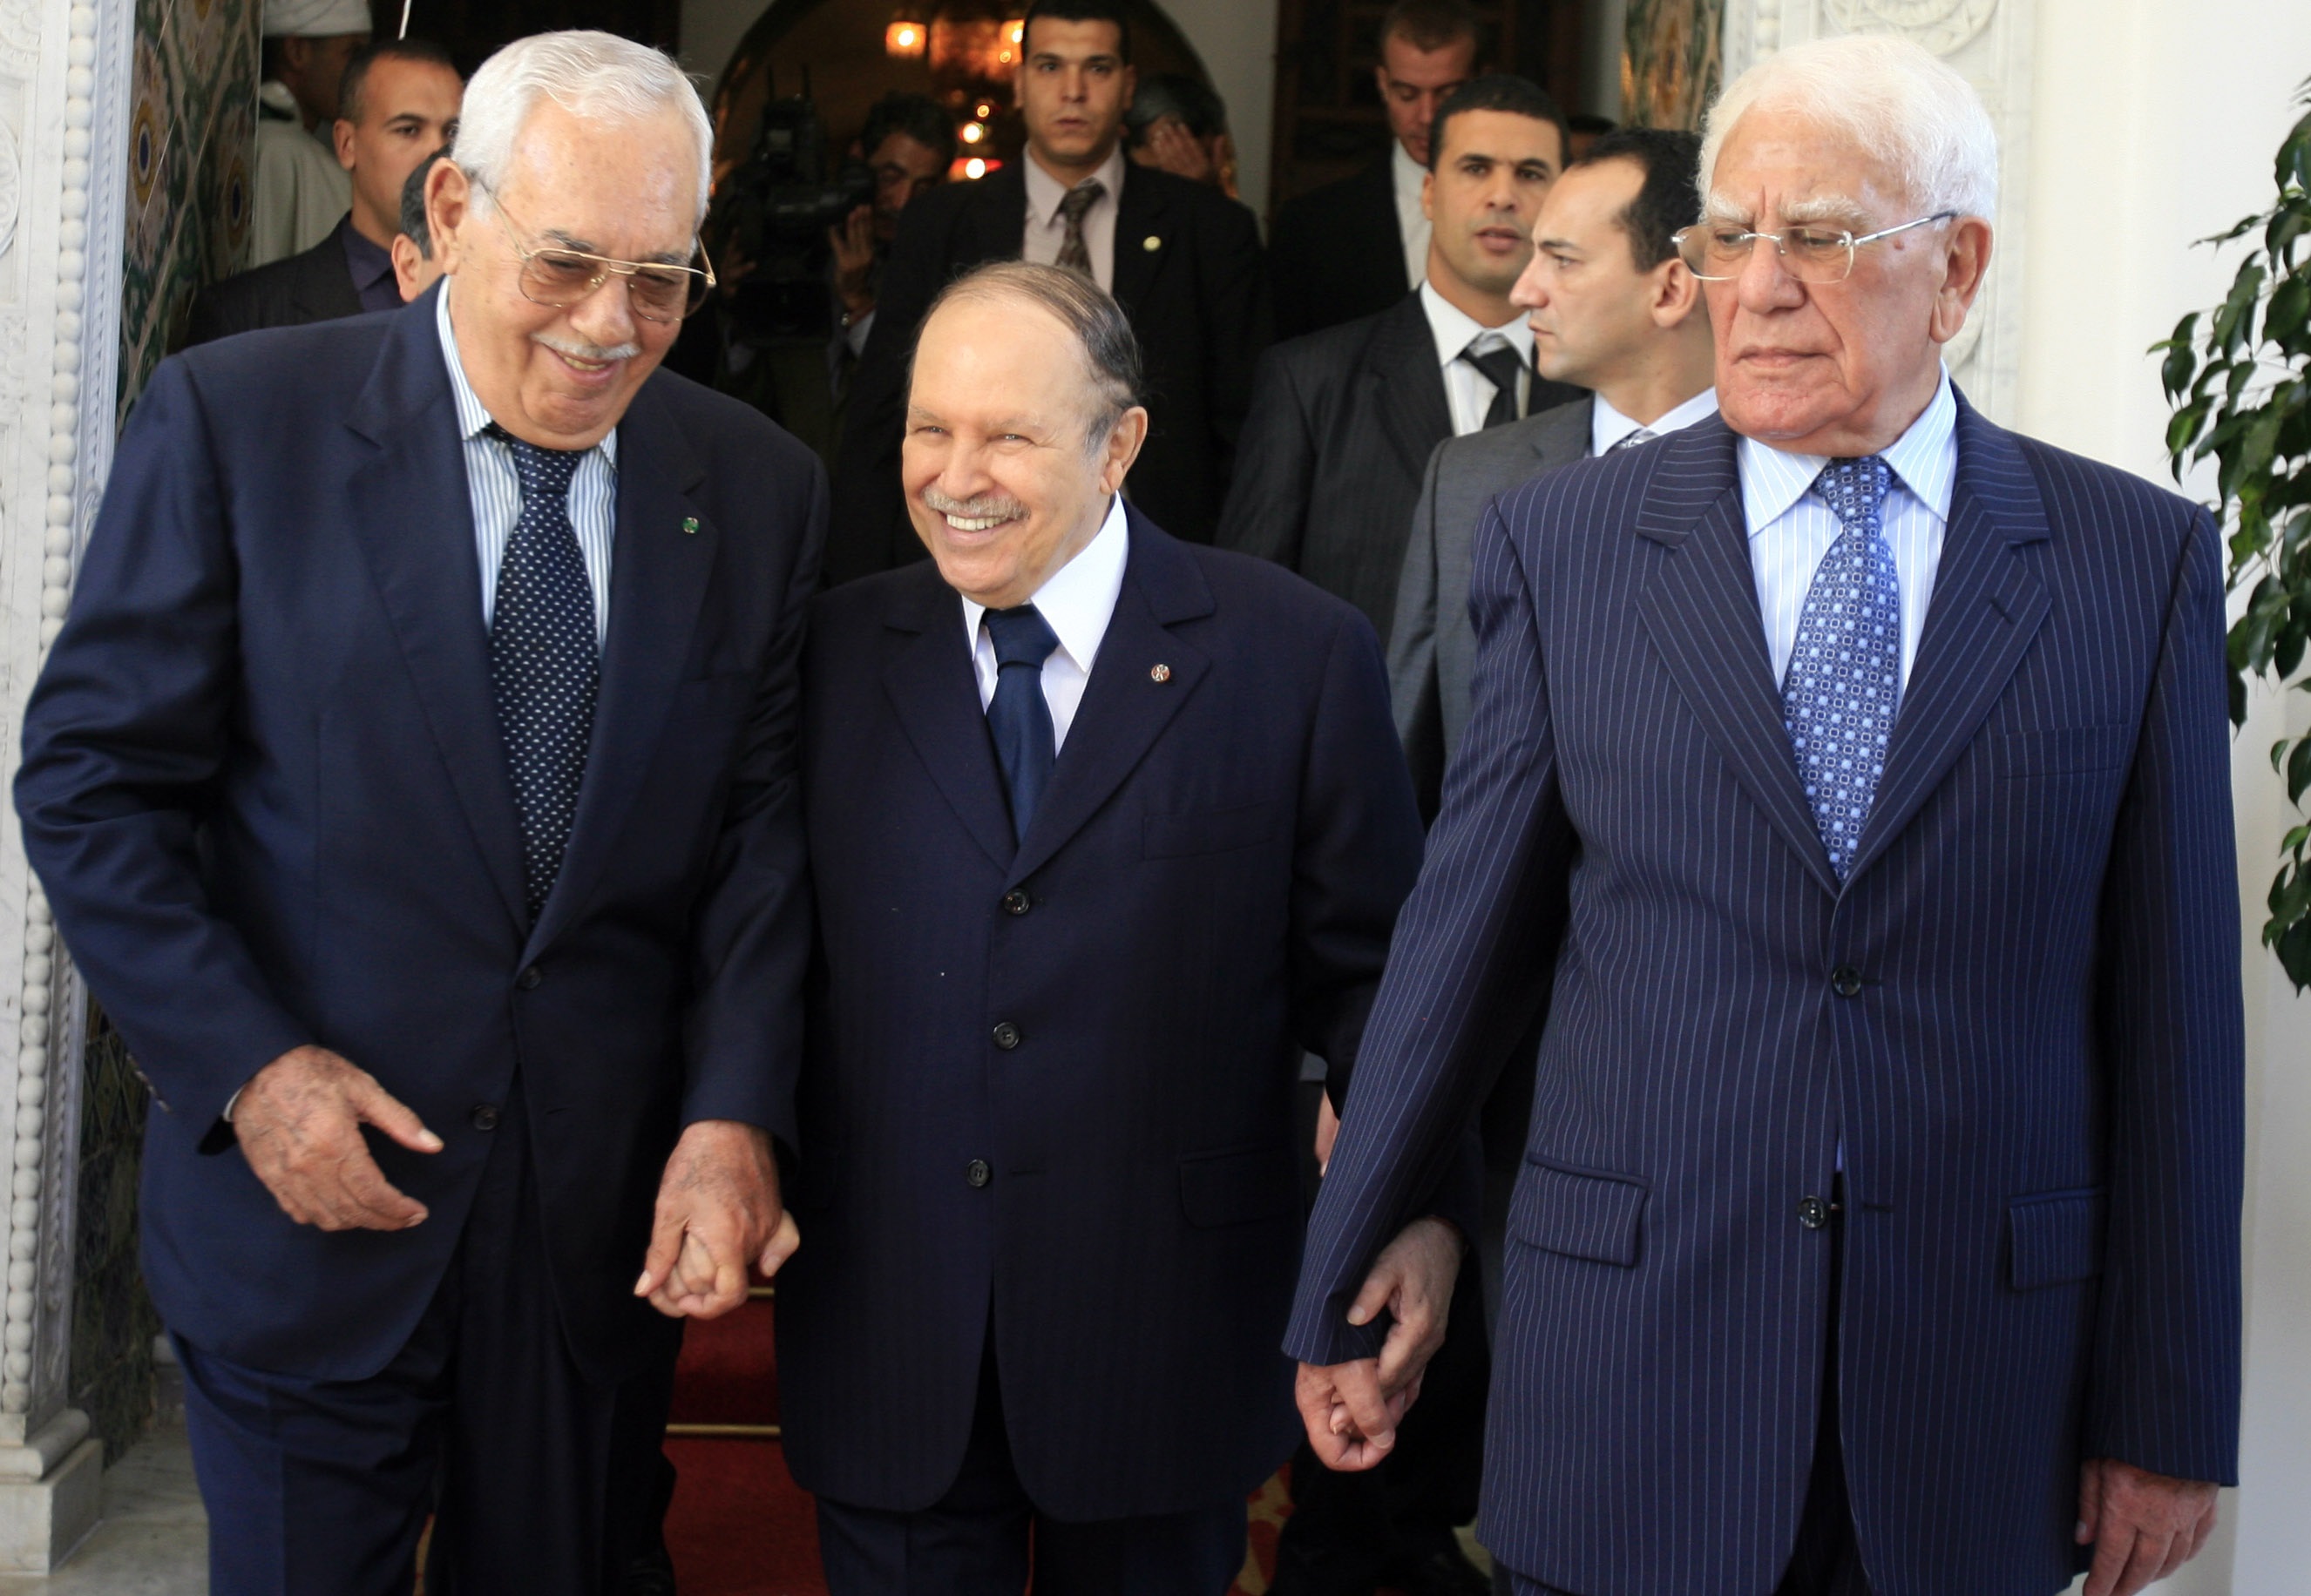 الرئيس الجزائري الراحل الشاذلي بن جديد (على يمين الصورة) ممسكا بيد الرئيس الحالي عبدالعزيز بو تفليقة (رويترز)